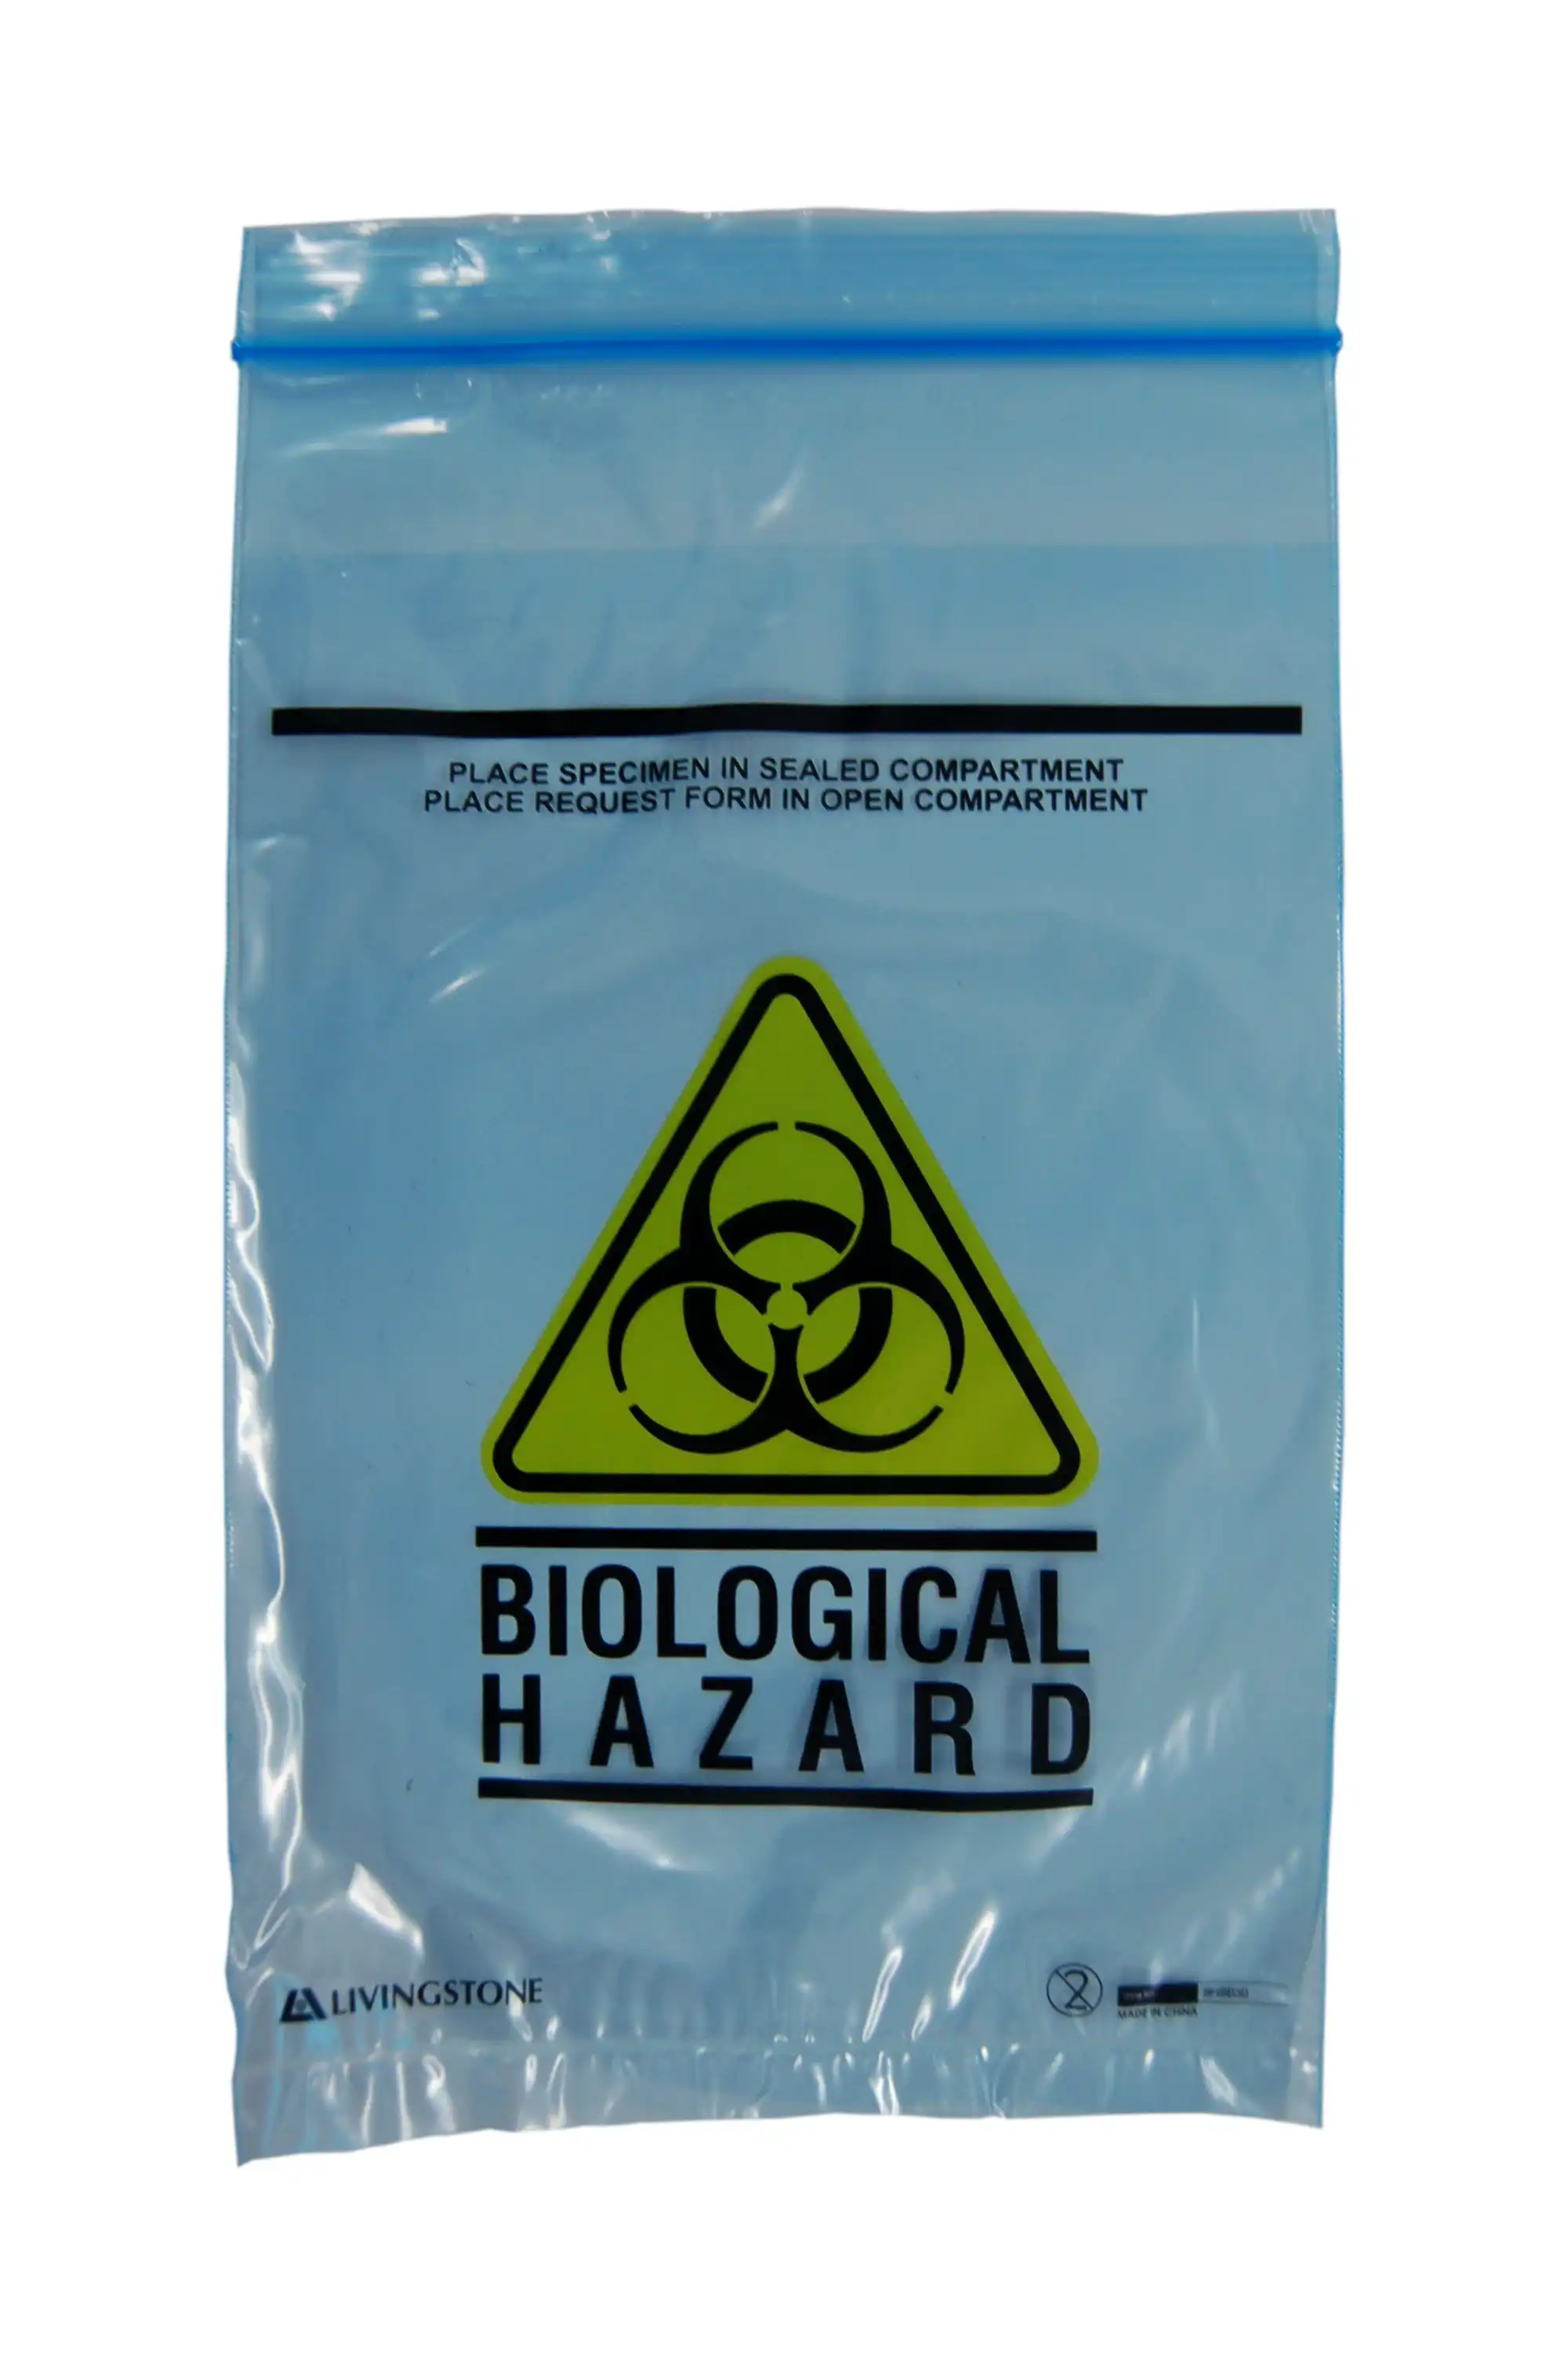 Livingstone Biohazard Specimen Bag, 16x24.5cm, 3-Ply, 2 Compts, Zip Compt, 2-Ply, 45um, Pouch Compt, 1-Ply, 32um, Blue Tint, 2000/Ctn x3